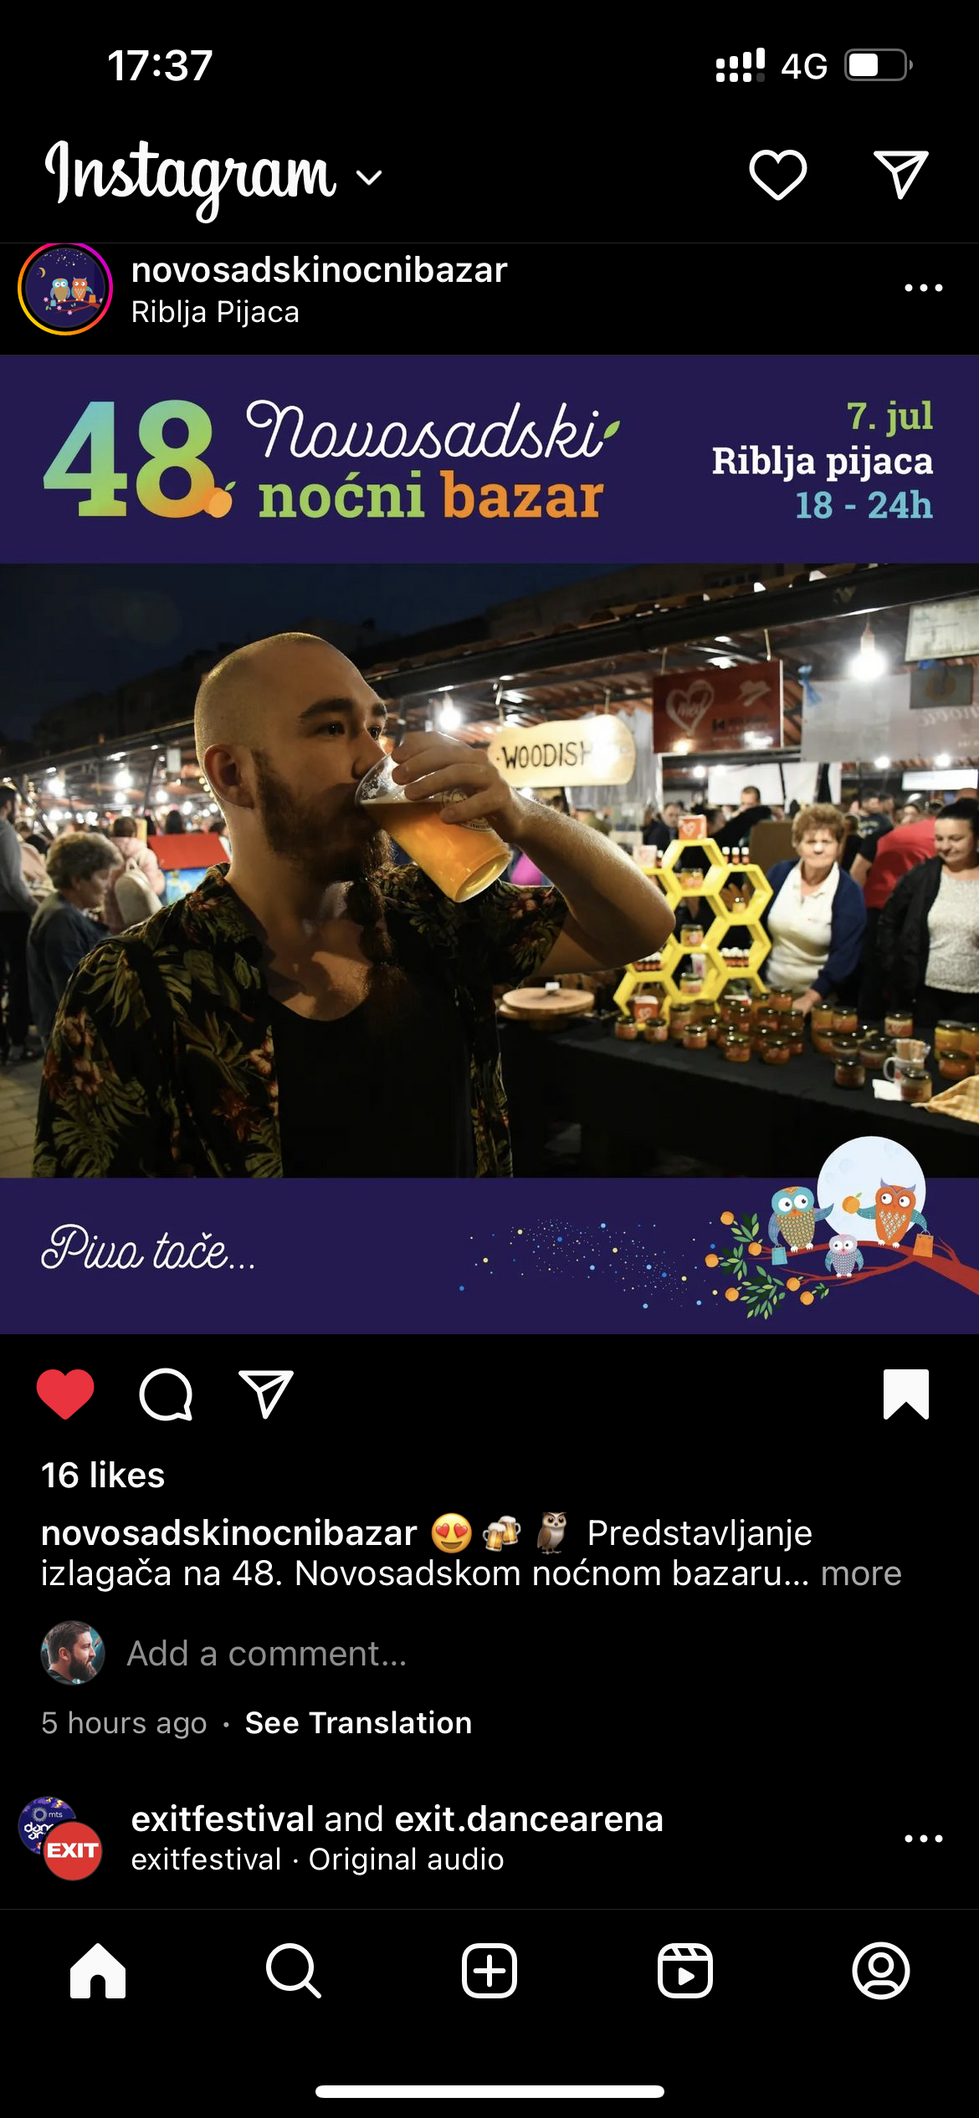 Скриншот из Инстаграма - аккаунт Нови-Садского Ночного базара, на фото мой брат пьёт местное пиво 